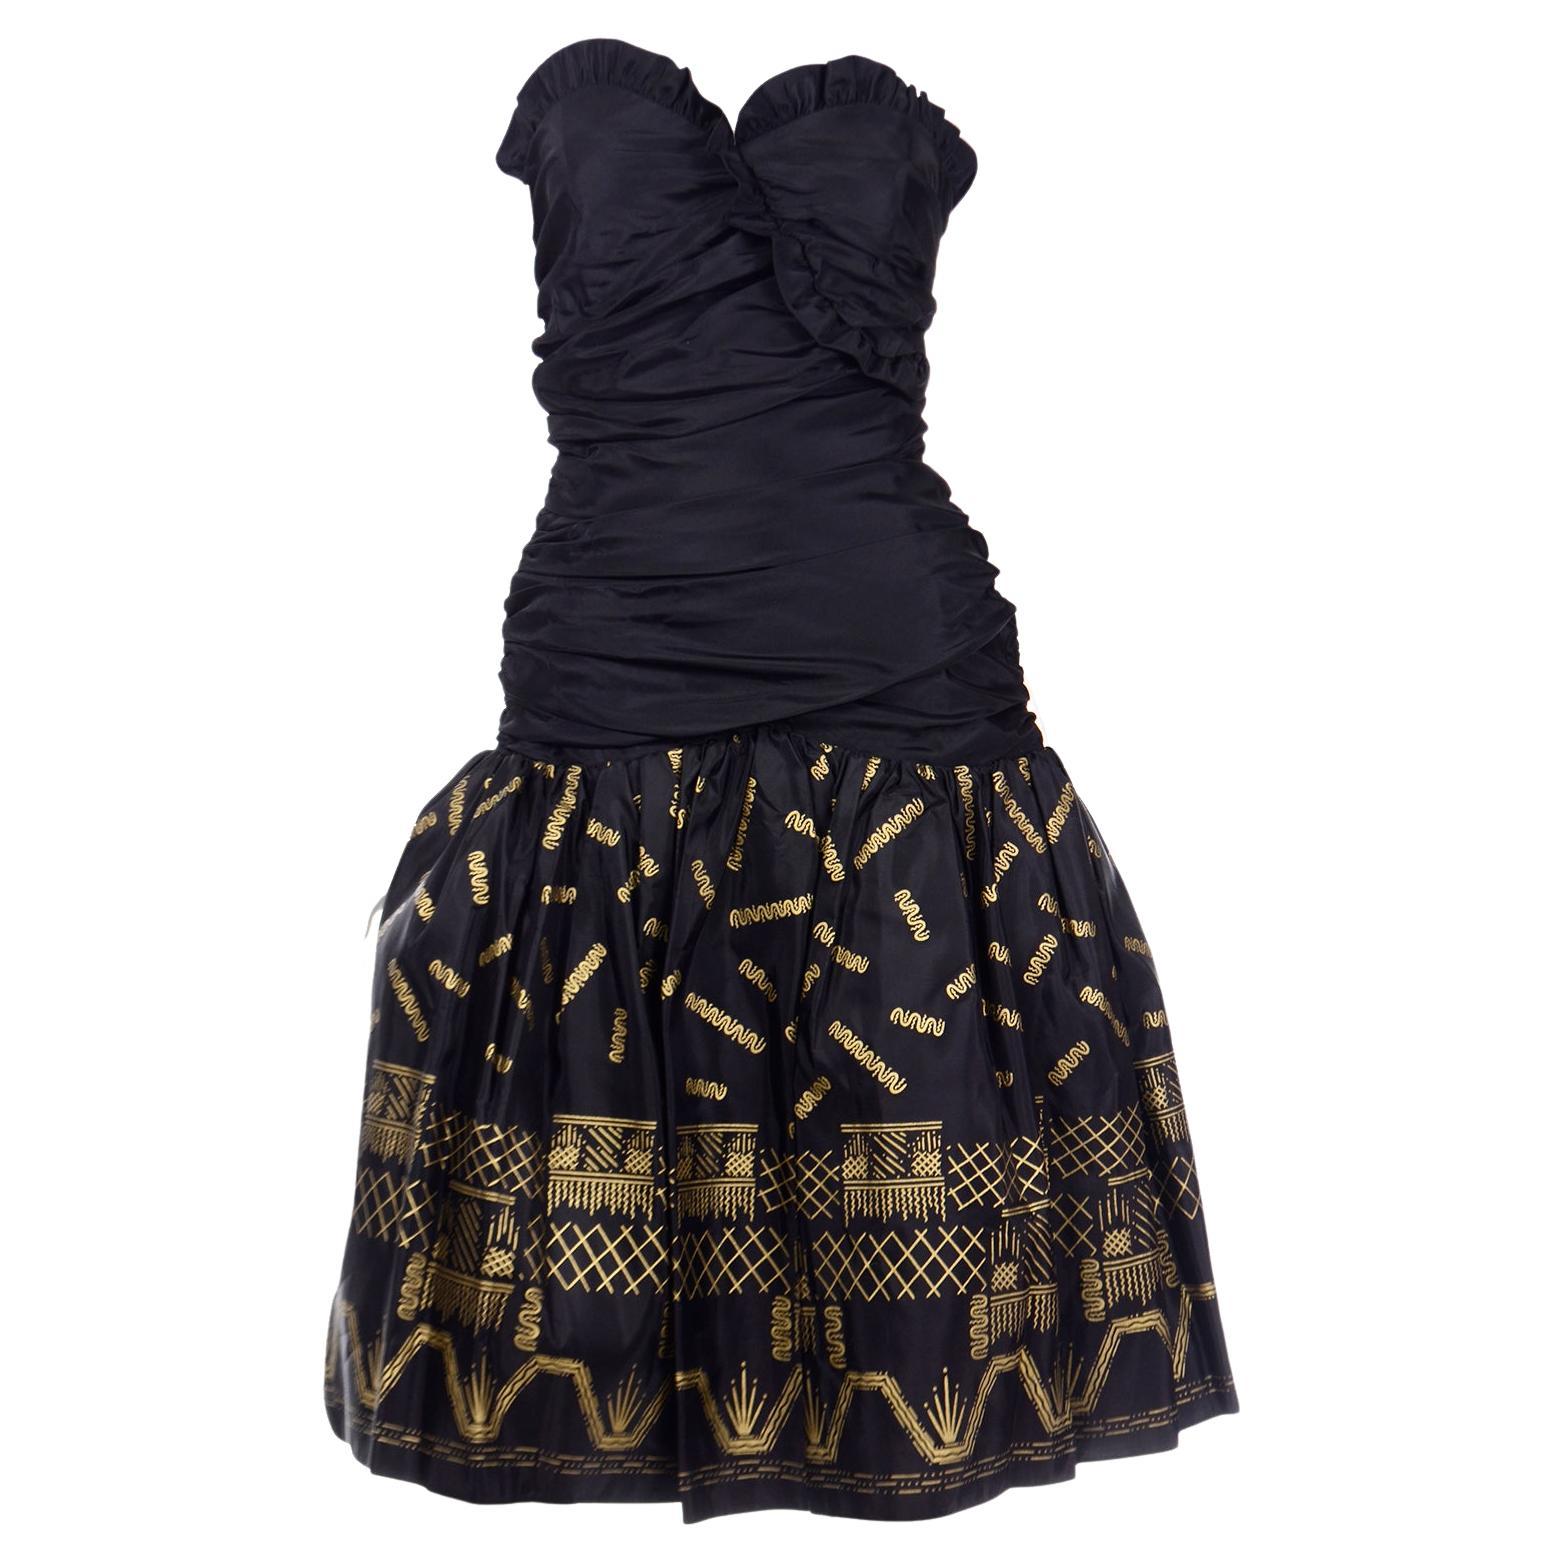 Vintage Zandra Rhodes Black Strapless 1980s Evening Dress w Gold Stencil Design